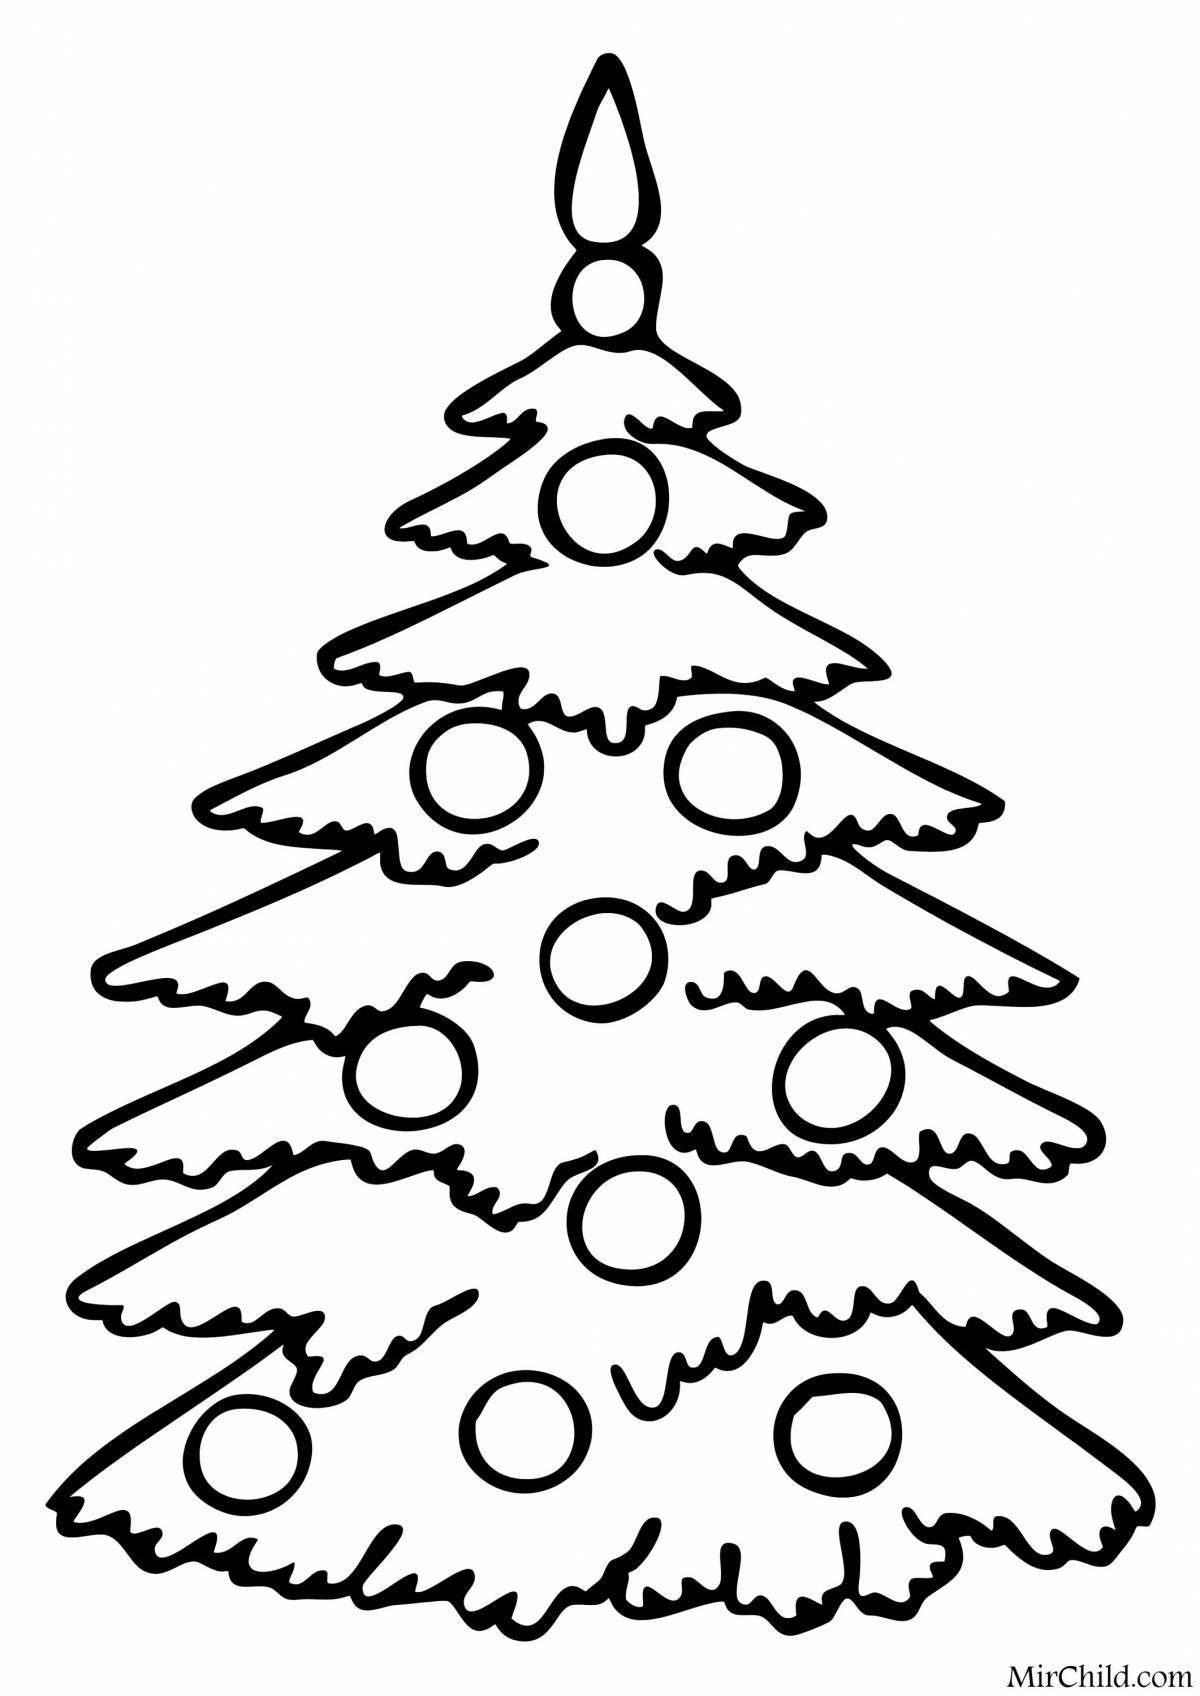 Величественная раскраска рождественская елка с шарами